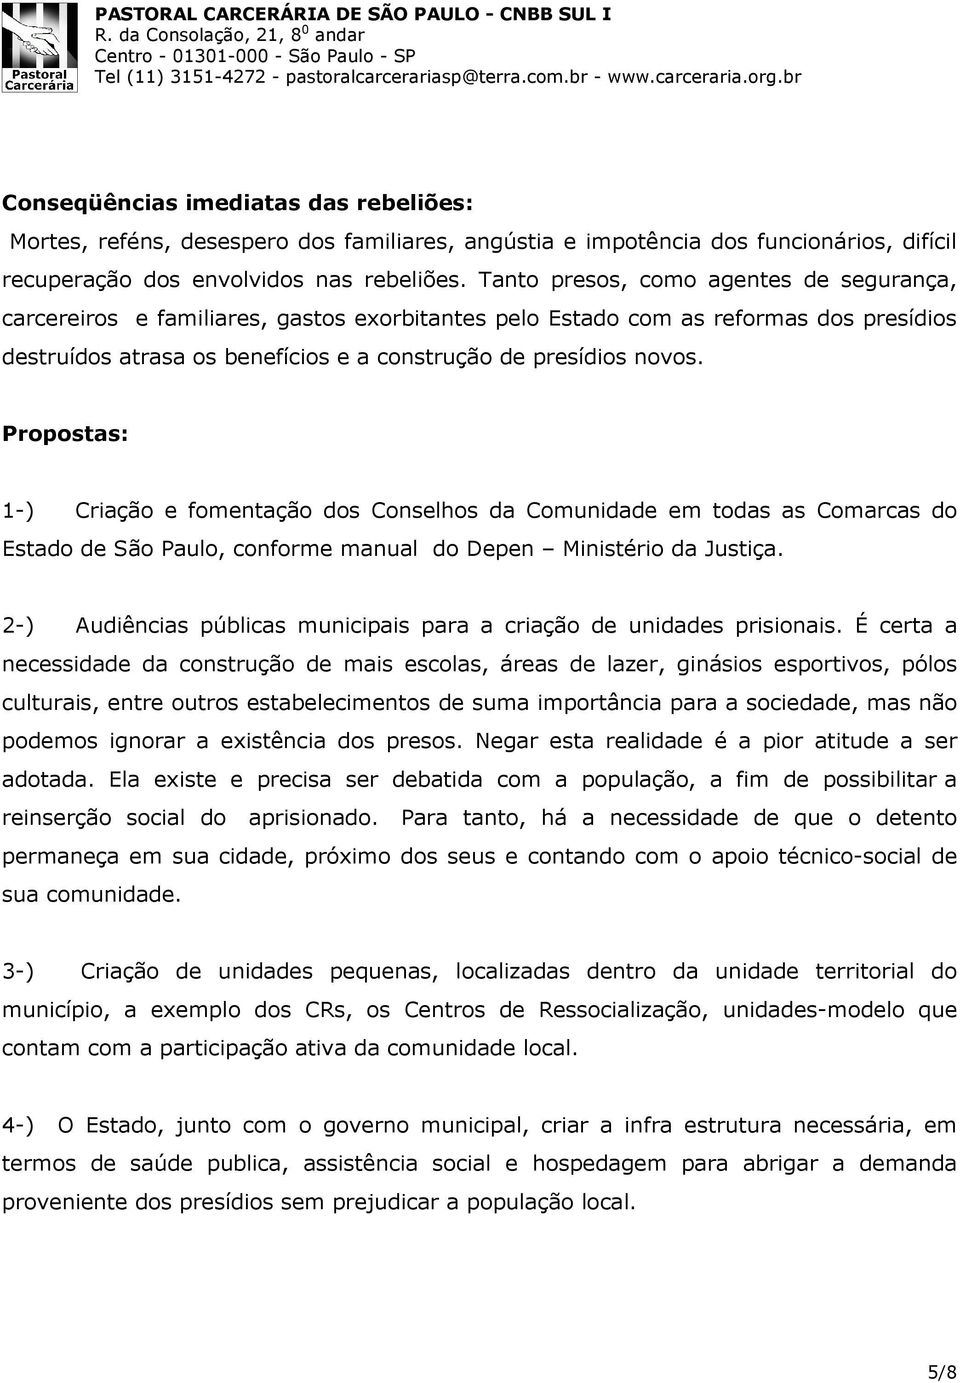 Propostas: 1-) Criação e fomentação dos Conselhos da Comunidade em todas as Comarcas do Estado de São Paulo, conforme manual do Depen Ministério da Justiça.